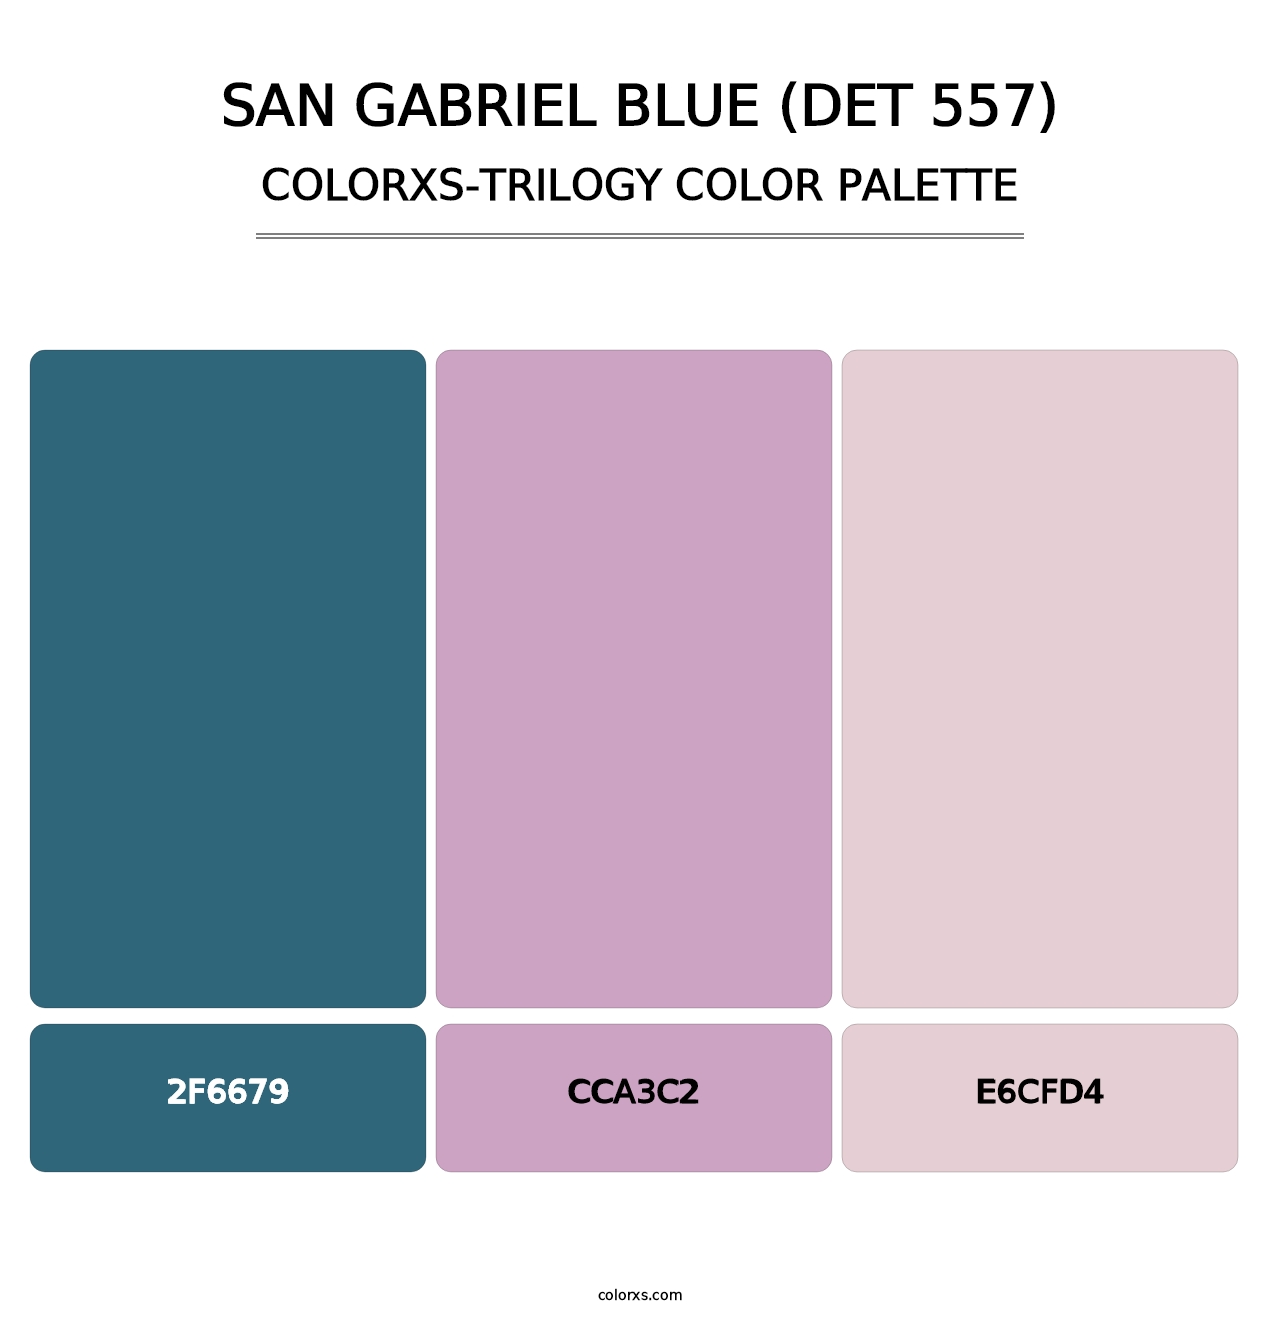 San Gabriel Blue (DET 557) - Colorxs Trilogy Palette